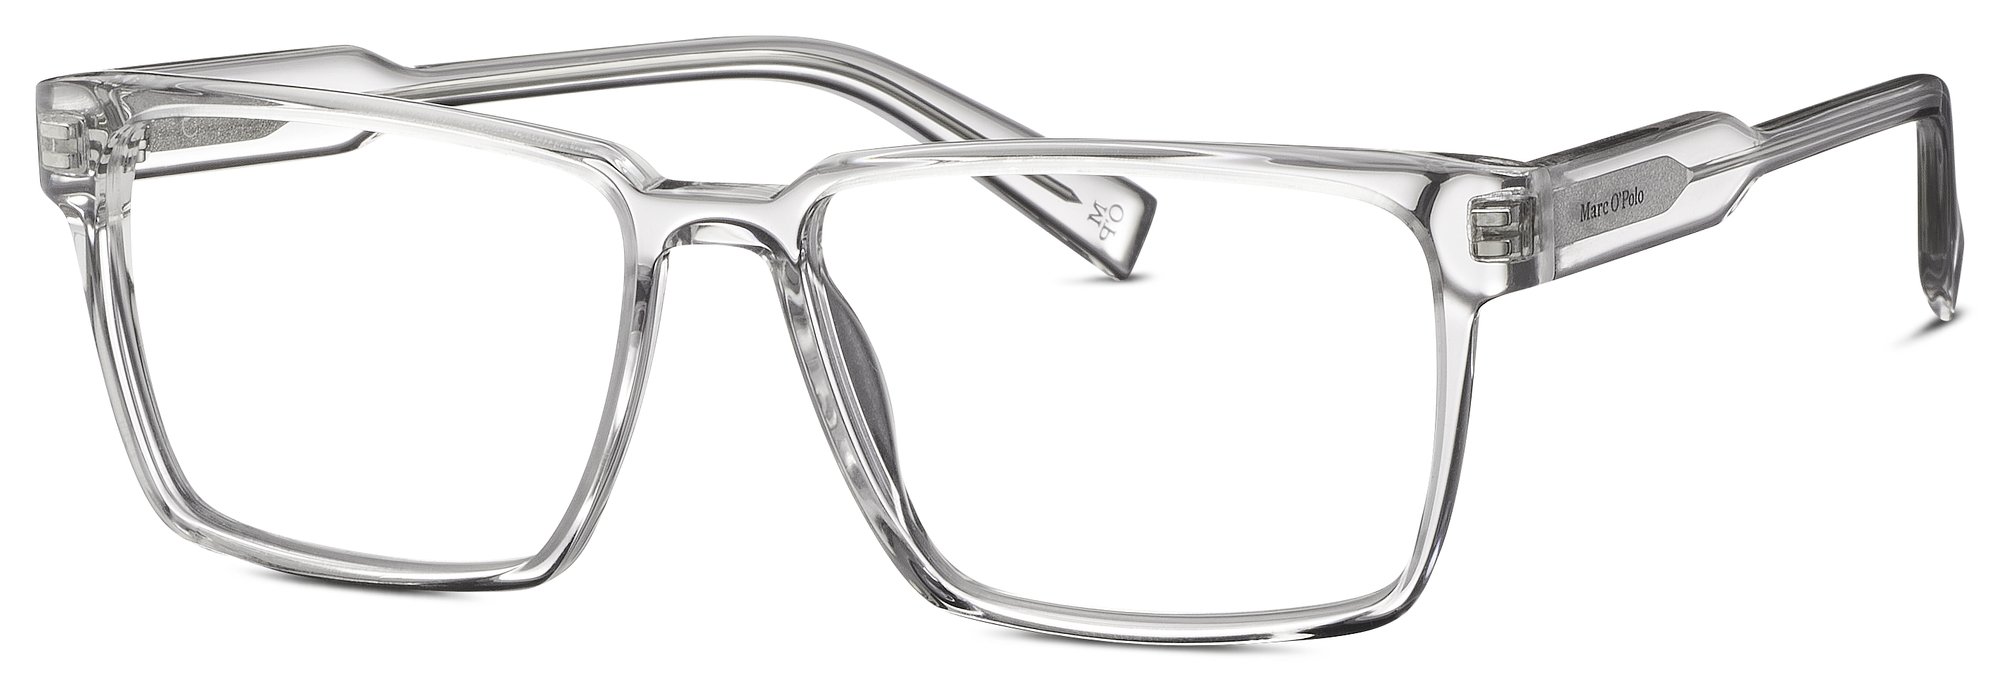 Das Bild zeigt die Korrektionsbrille  503219_30 5515 von der Marke Marc  ó Polo in der Farbe  grau transparent.